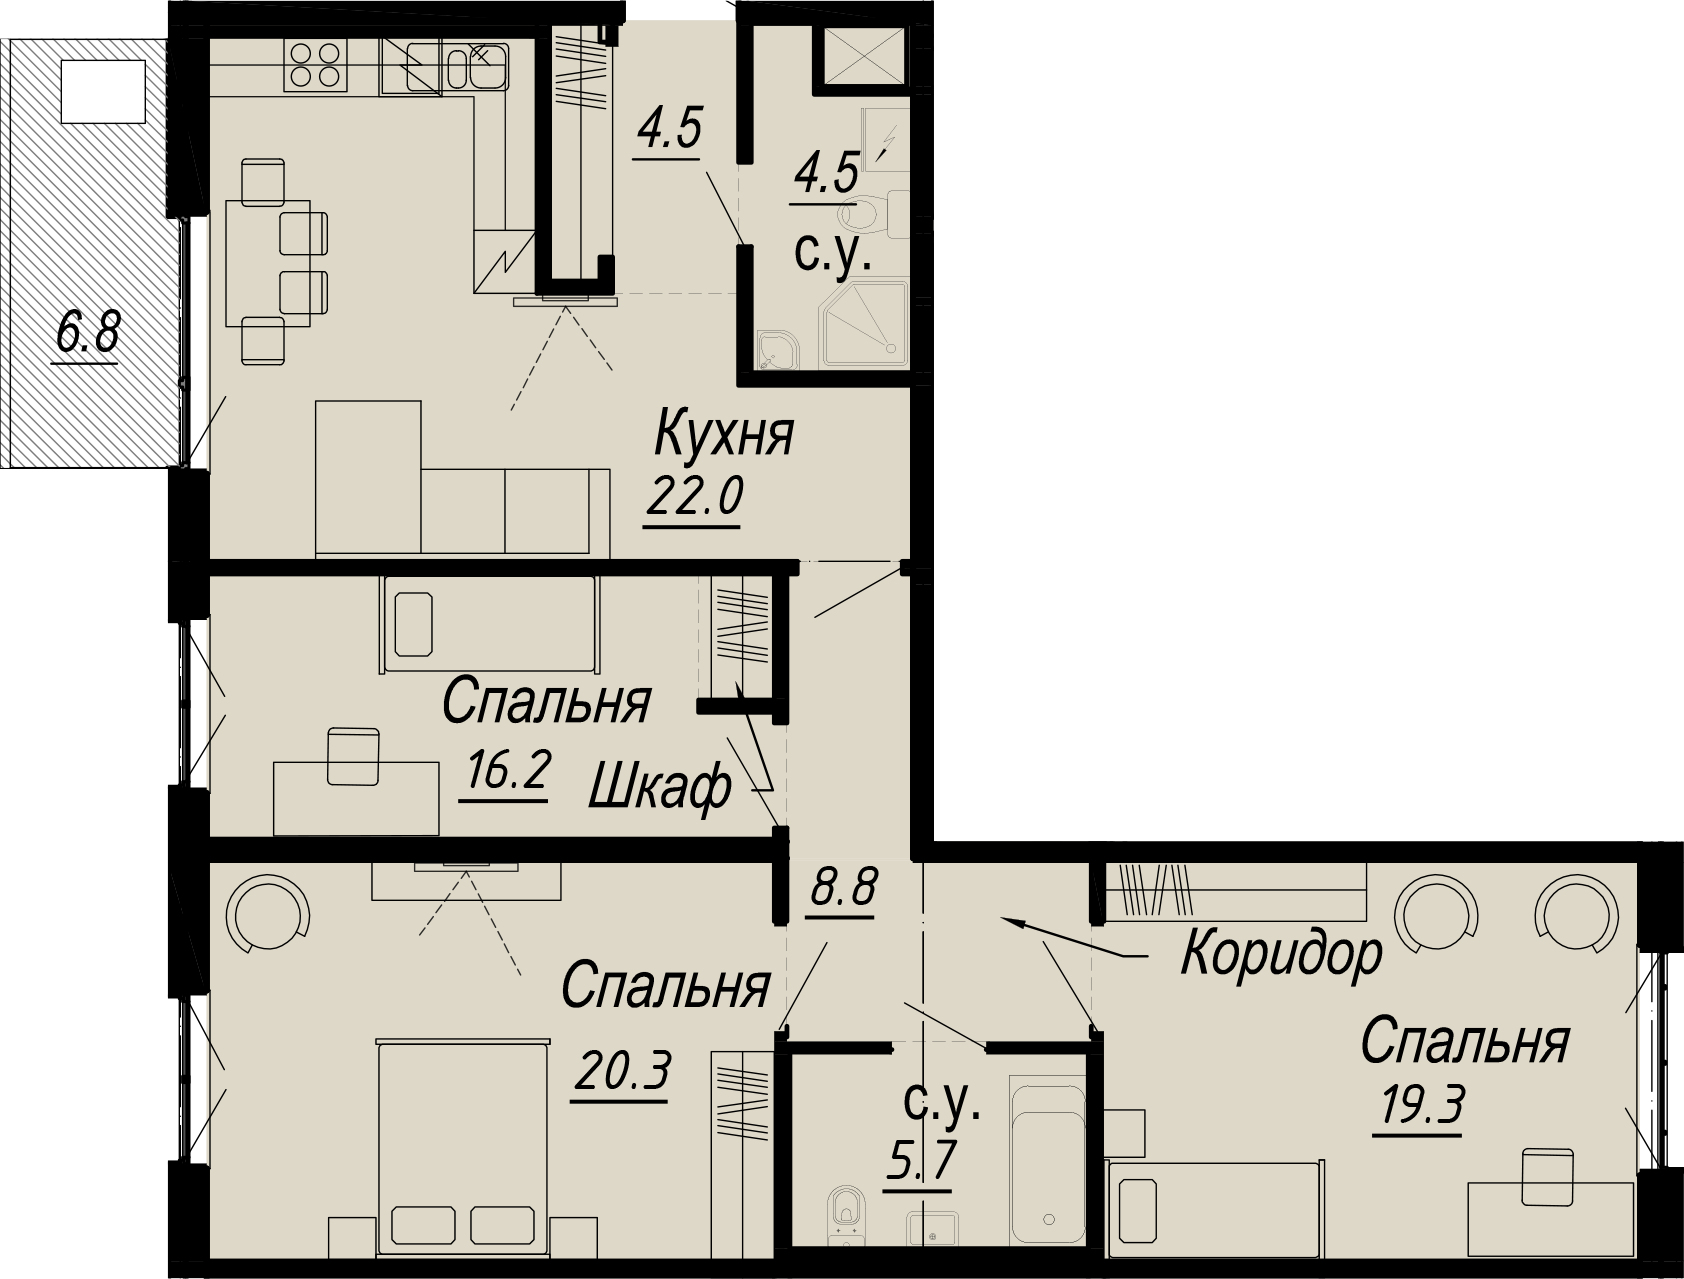 3-комнатная квартира  №11-5 в Meltzer Hall: 106.61 м², этаж 5 - купить в Санкт-Петербурге